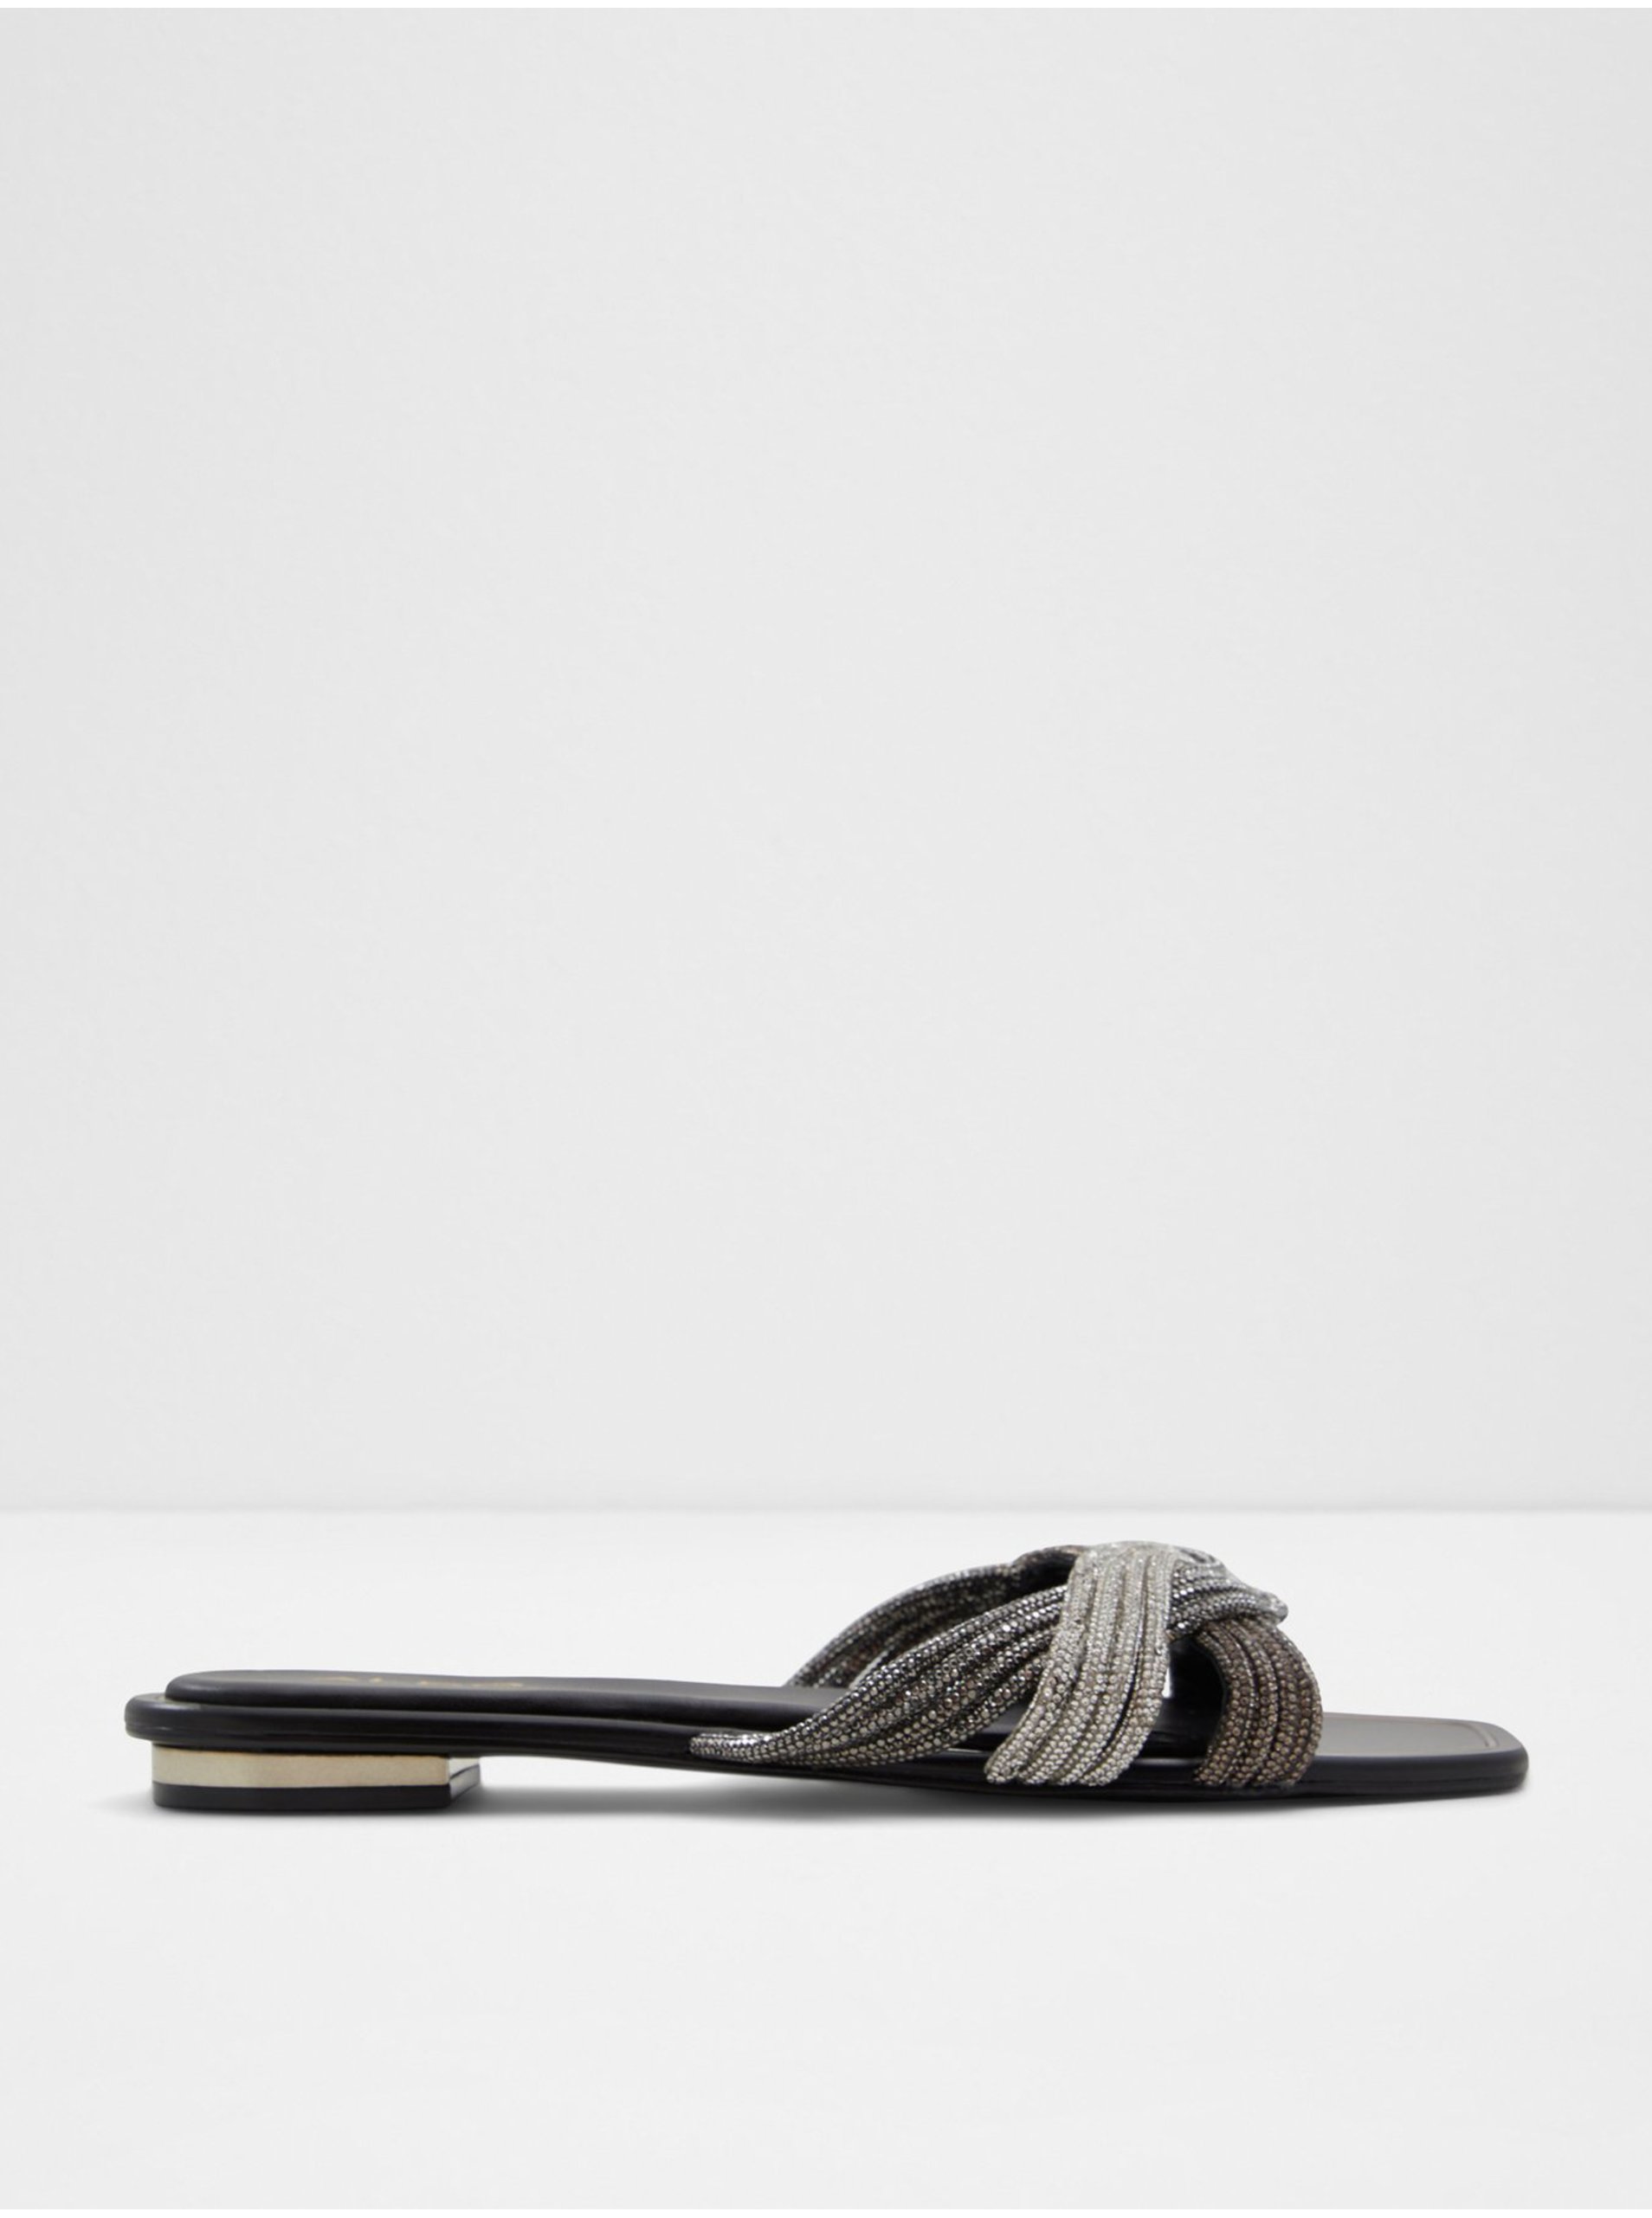 E-shop Černo-stříbrné dámské pantofle ALDO Naira